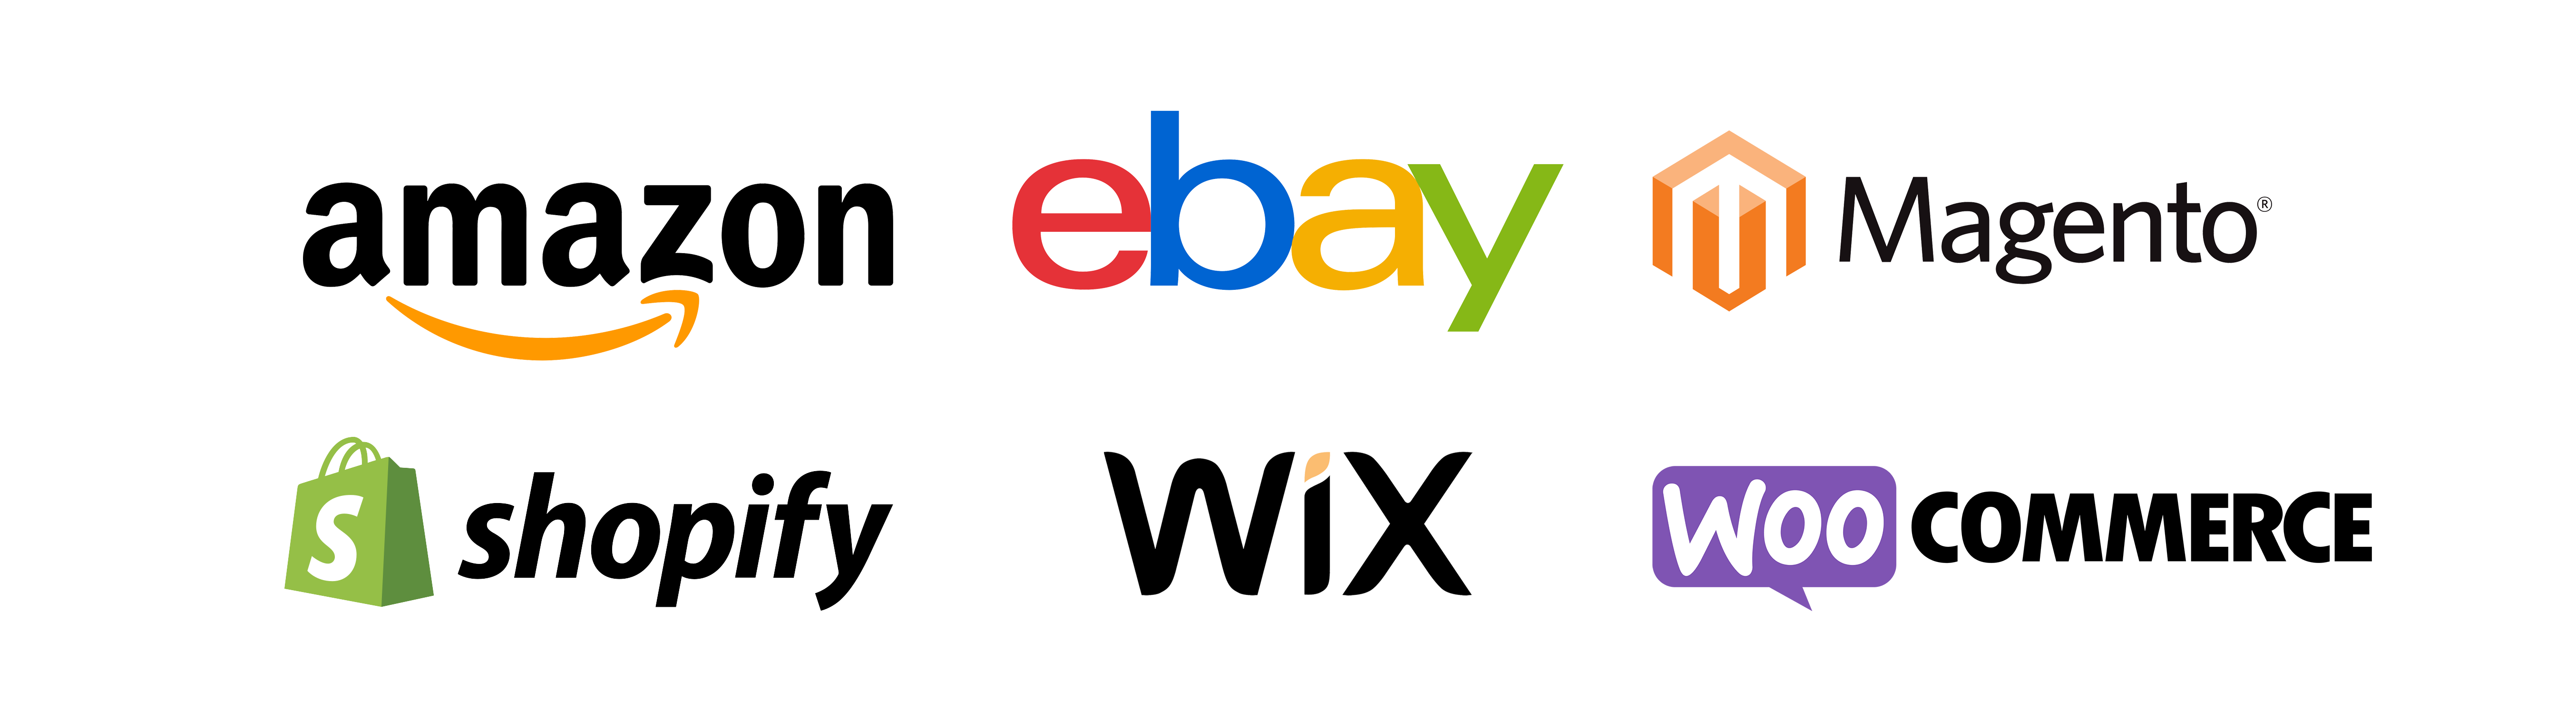 marketplace logos- amazon, ebay, magento, shopify, wix, woo commerce